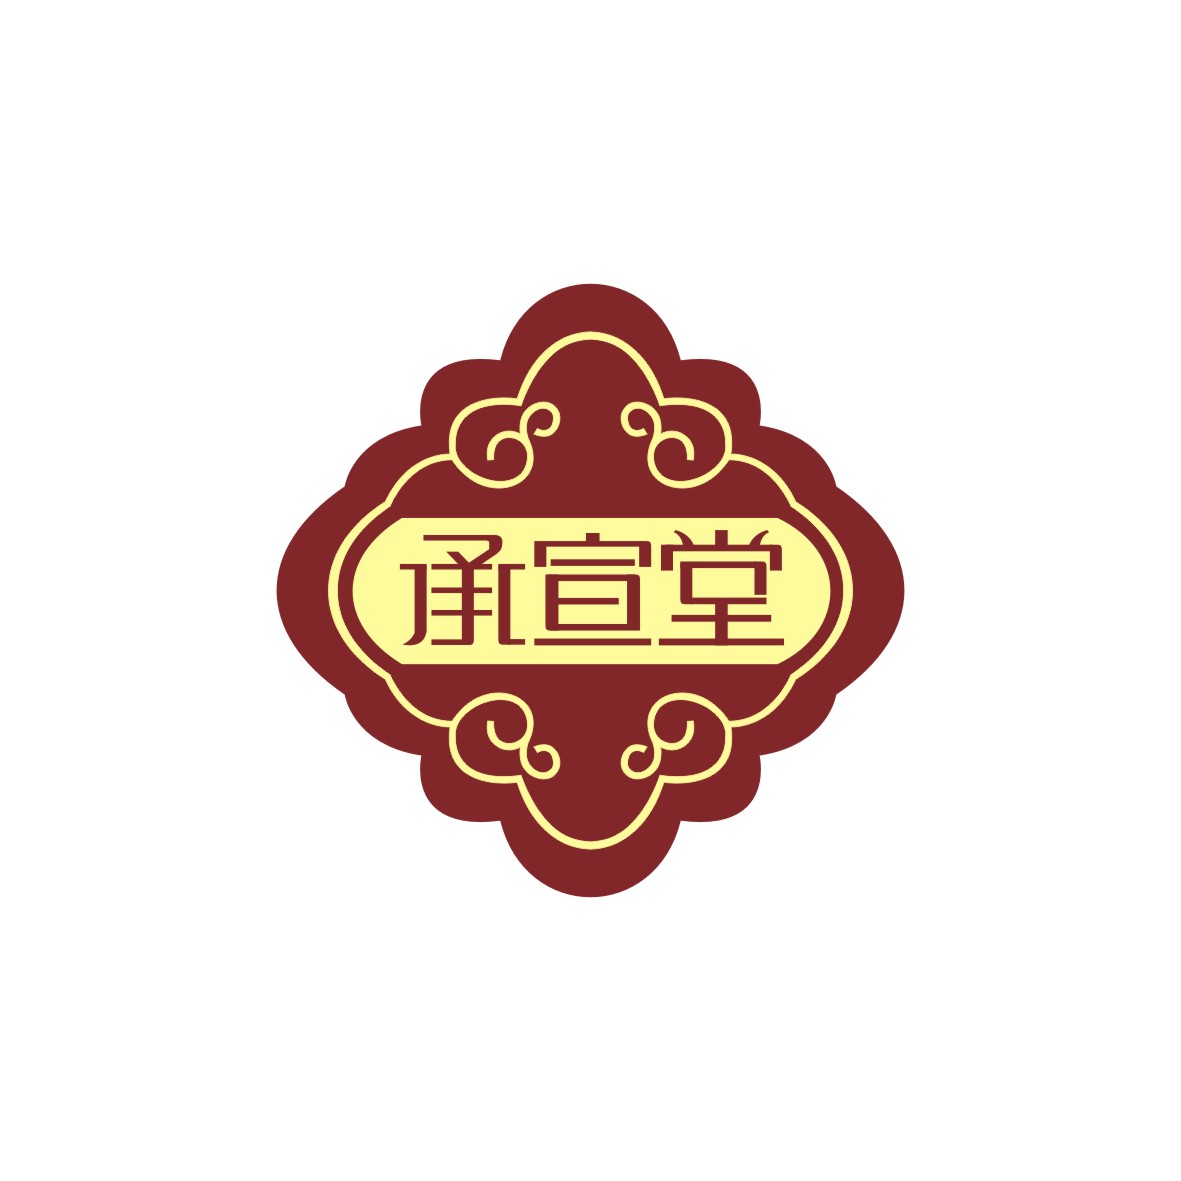 广州市君衍电子商务商行商标承宣堂（44类）商标转让流程及费用